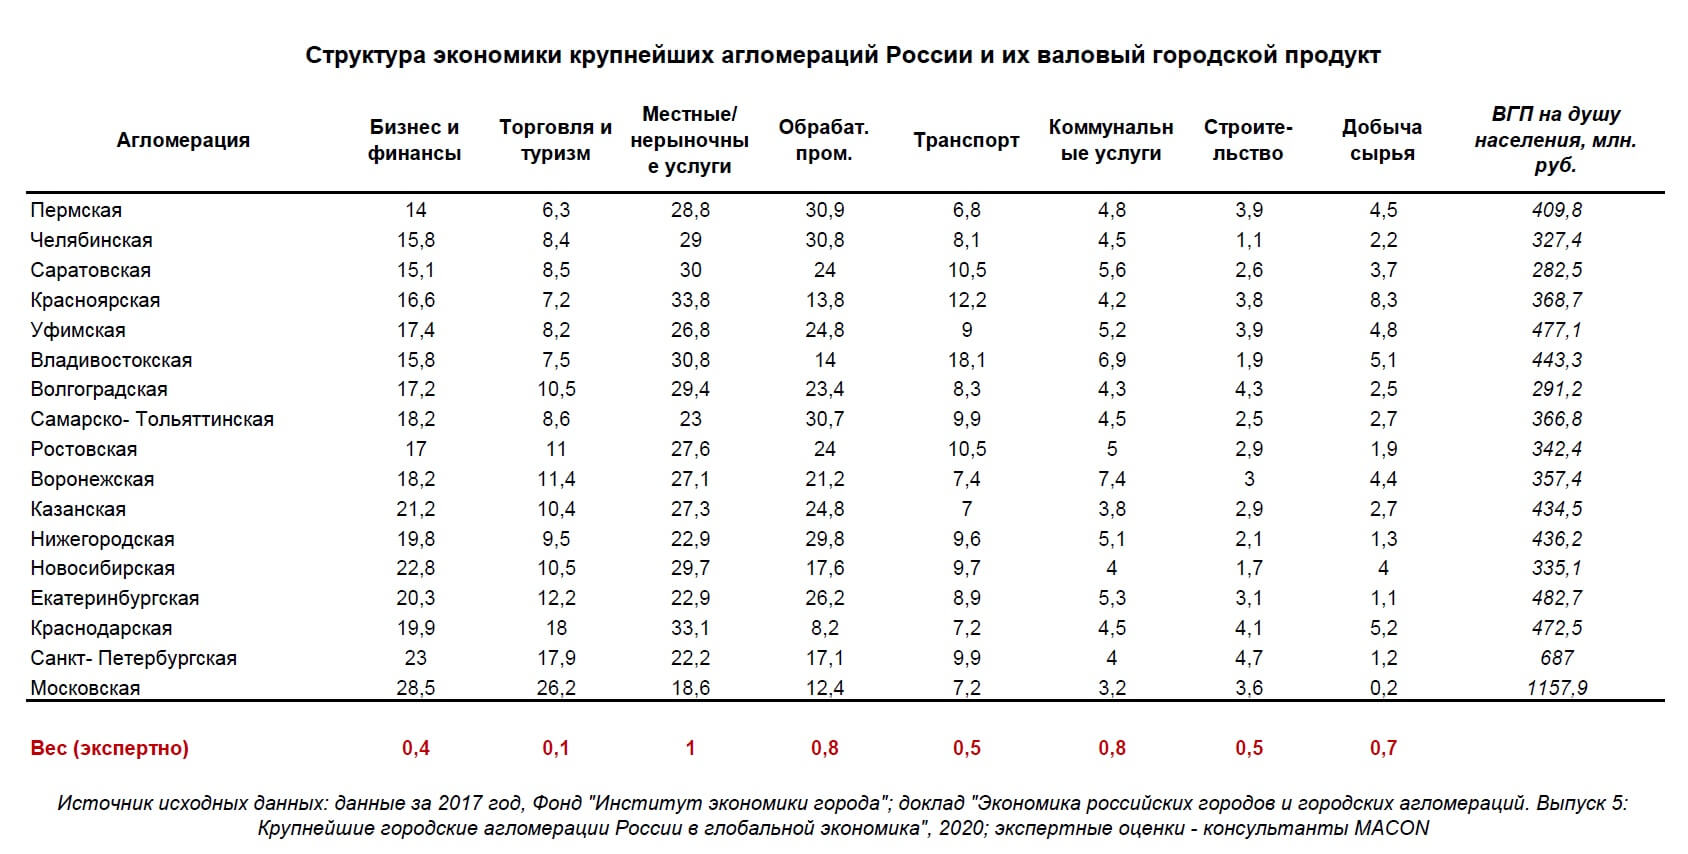 L’estructura de l’economia i el PIB de les aglomeracions russes